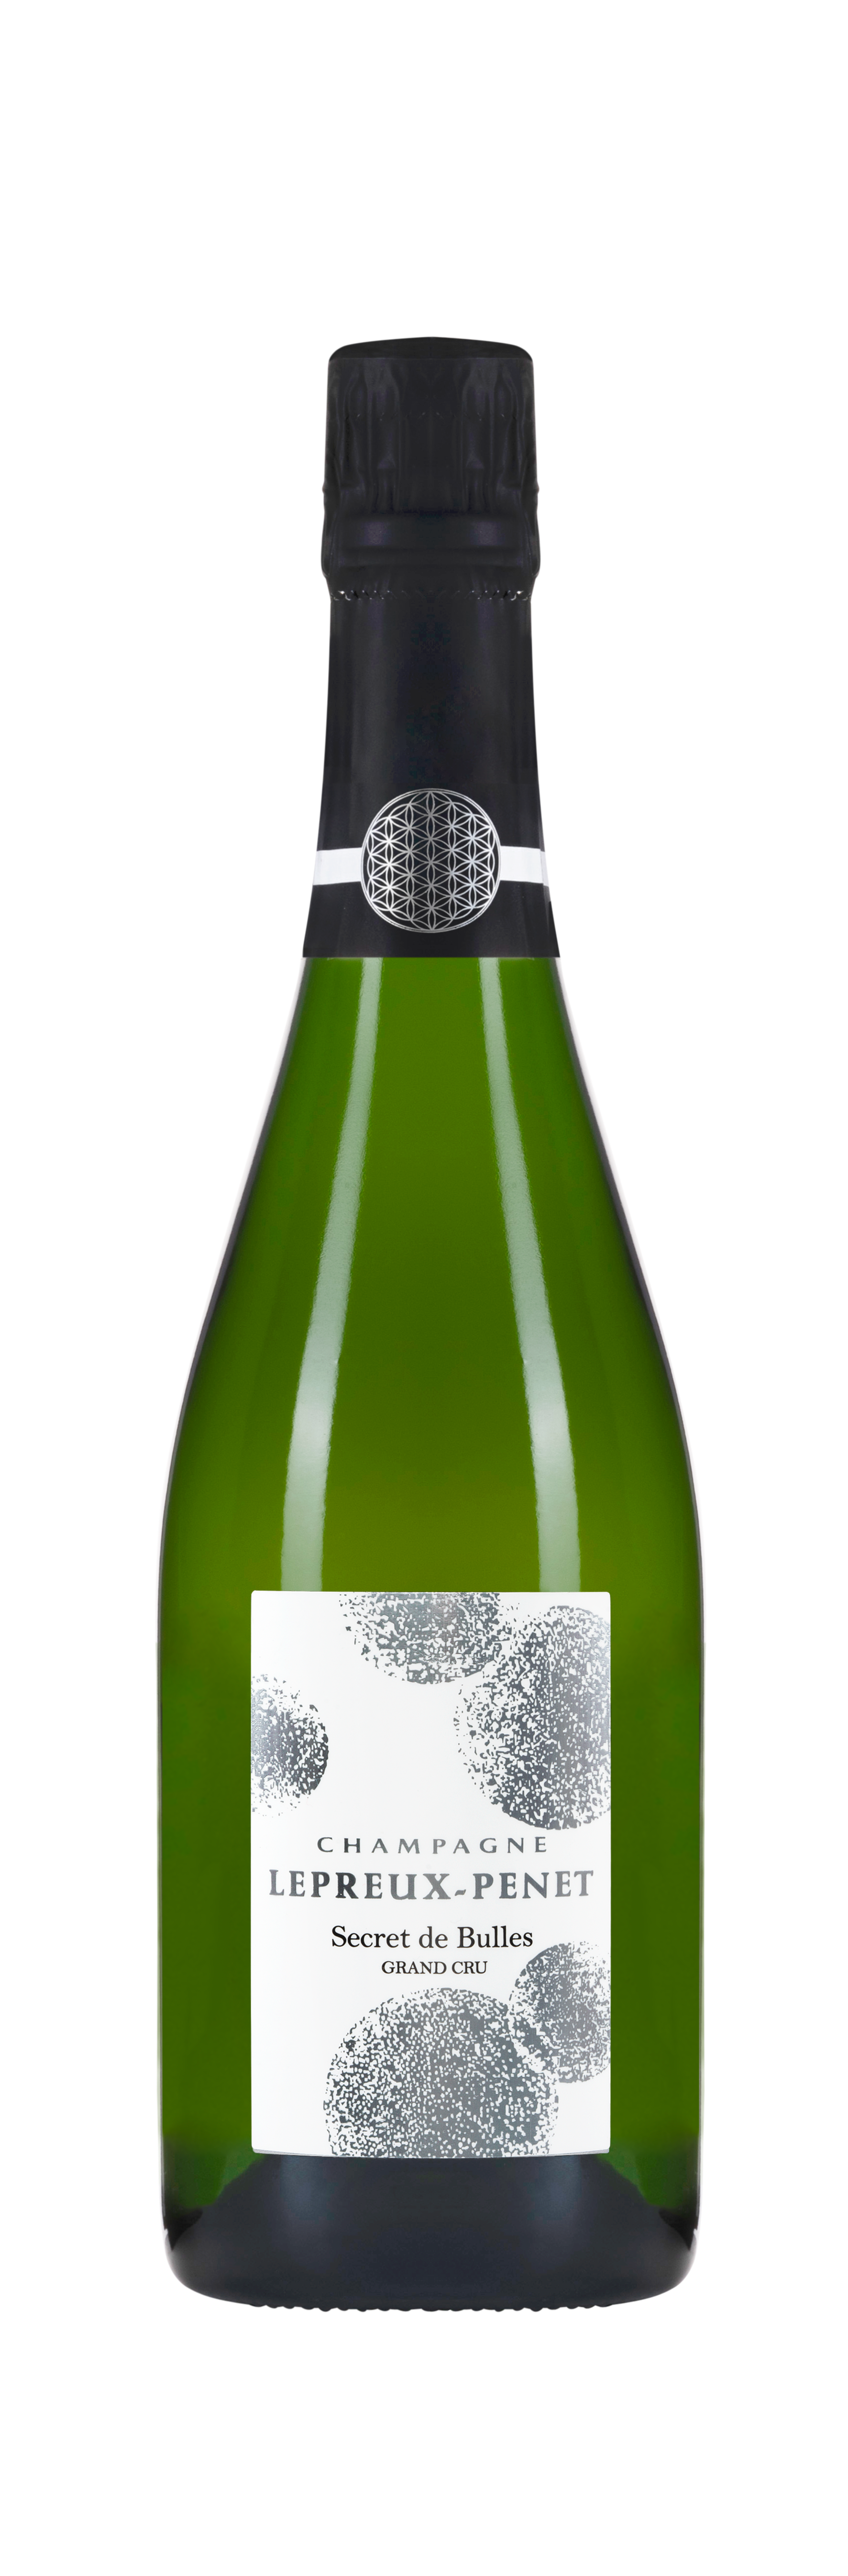 Champagne Lepreux-Penet, Secret de Bulles, Weiß, NV, Champagne grand cru. Bottle image